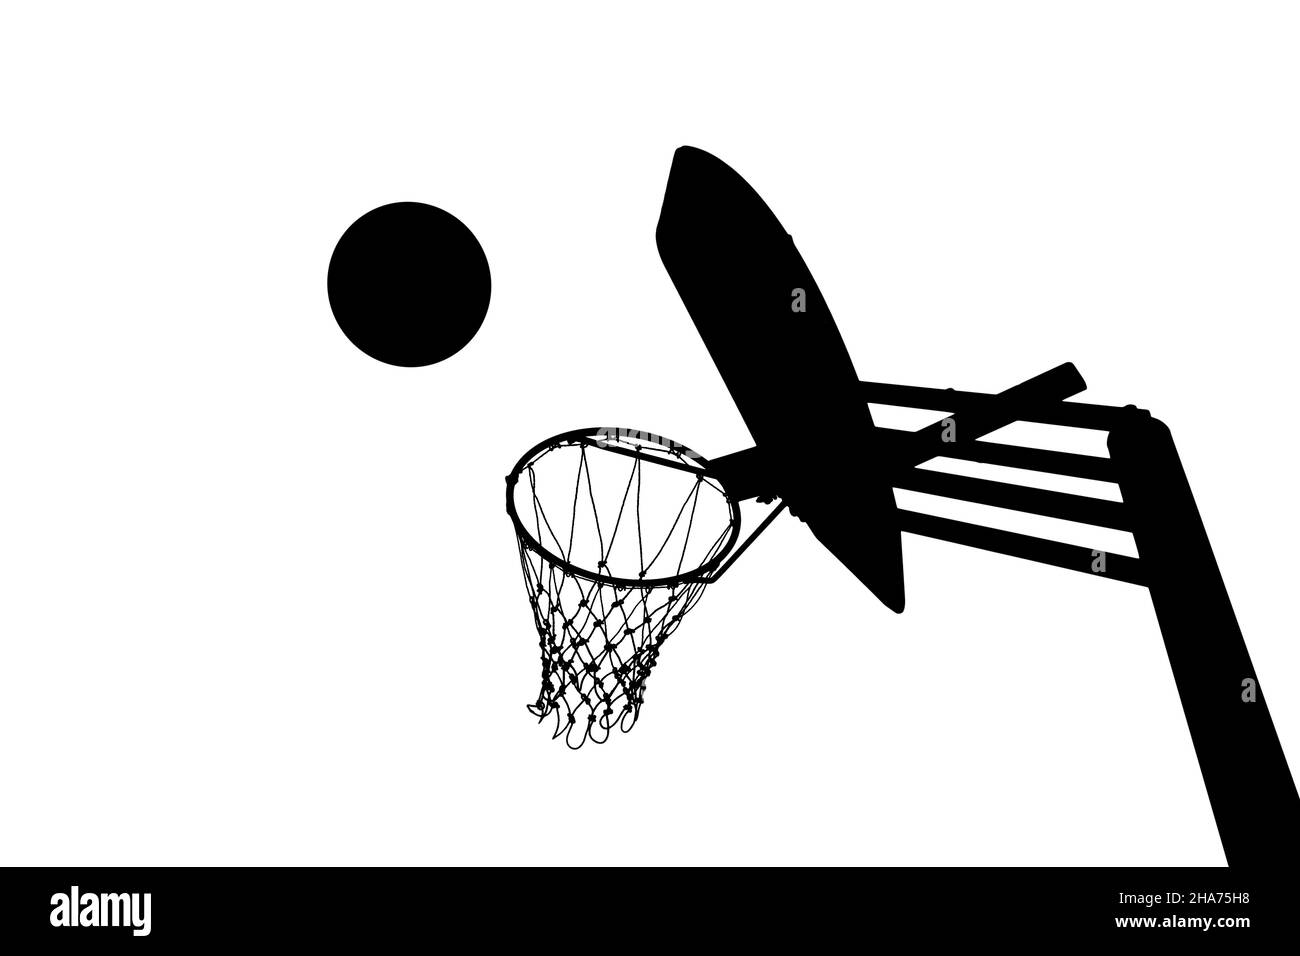 Silhouette de l'objectif de basket-ball, basket-ball traversant le panier, isolée sur fond blanc Banque D'Images